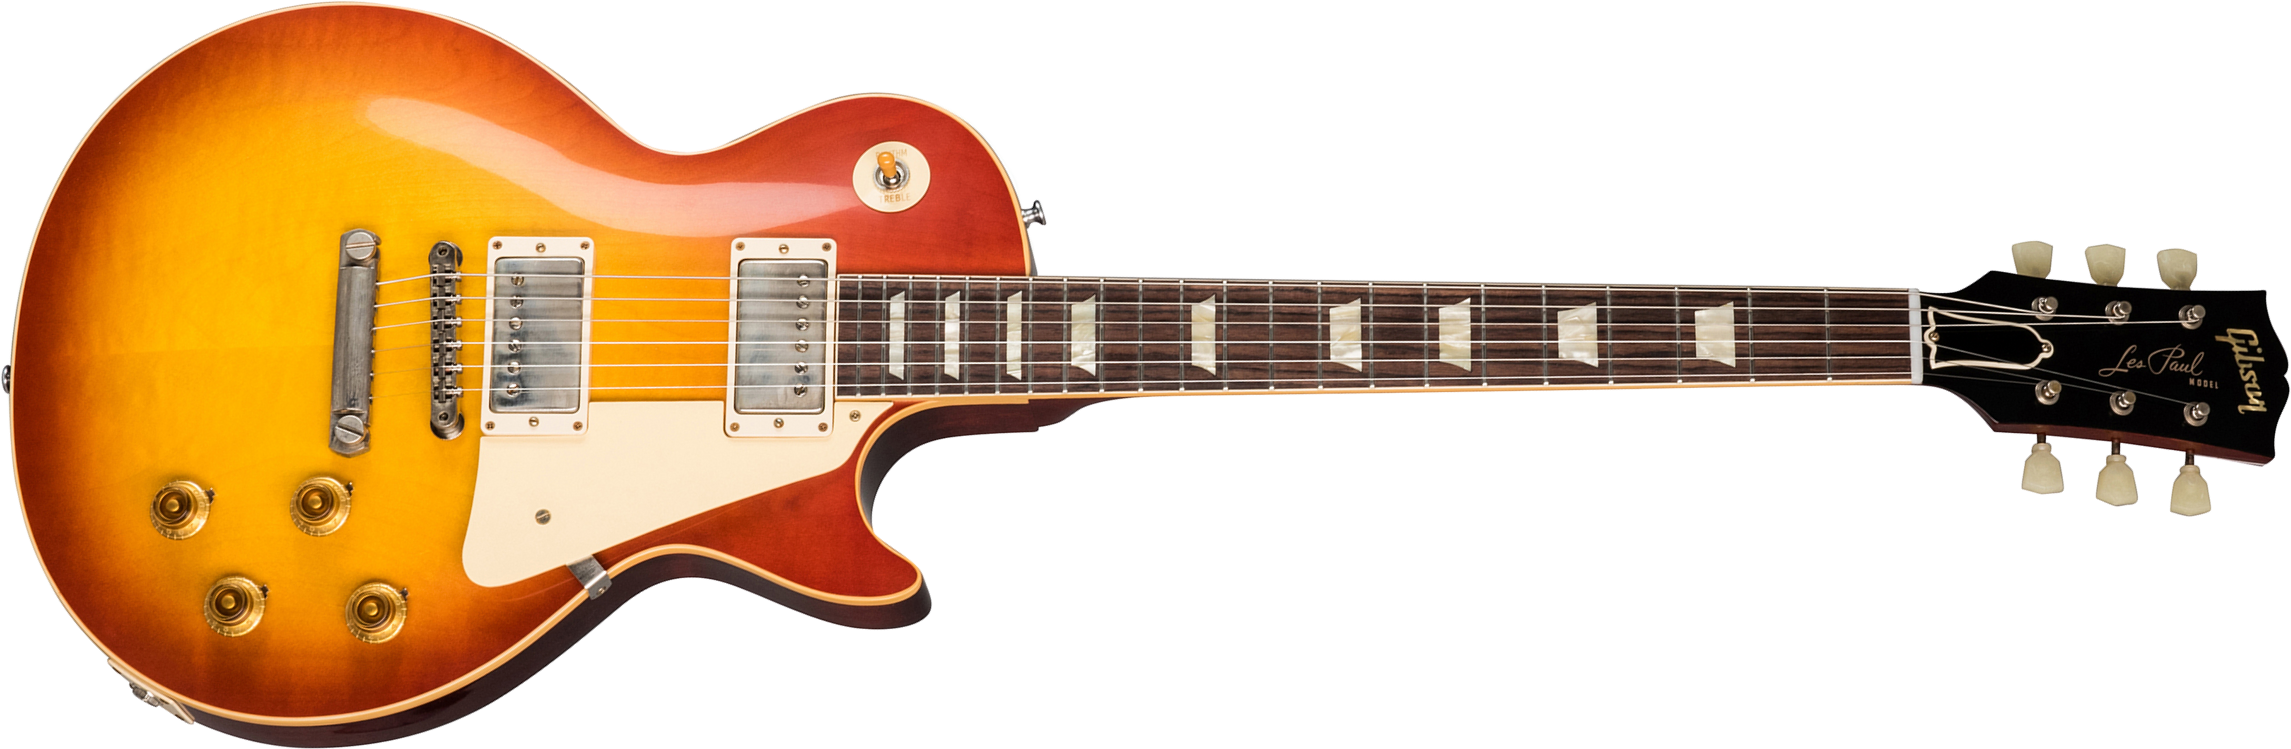 Gibson Custom Shop Les Paul Standard 1958 Reissue 2019 2h Ht Rw - Vos Washed Cherry Sunburst - Guitare Électrique Single Cut - Main picture